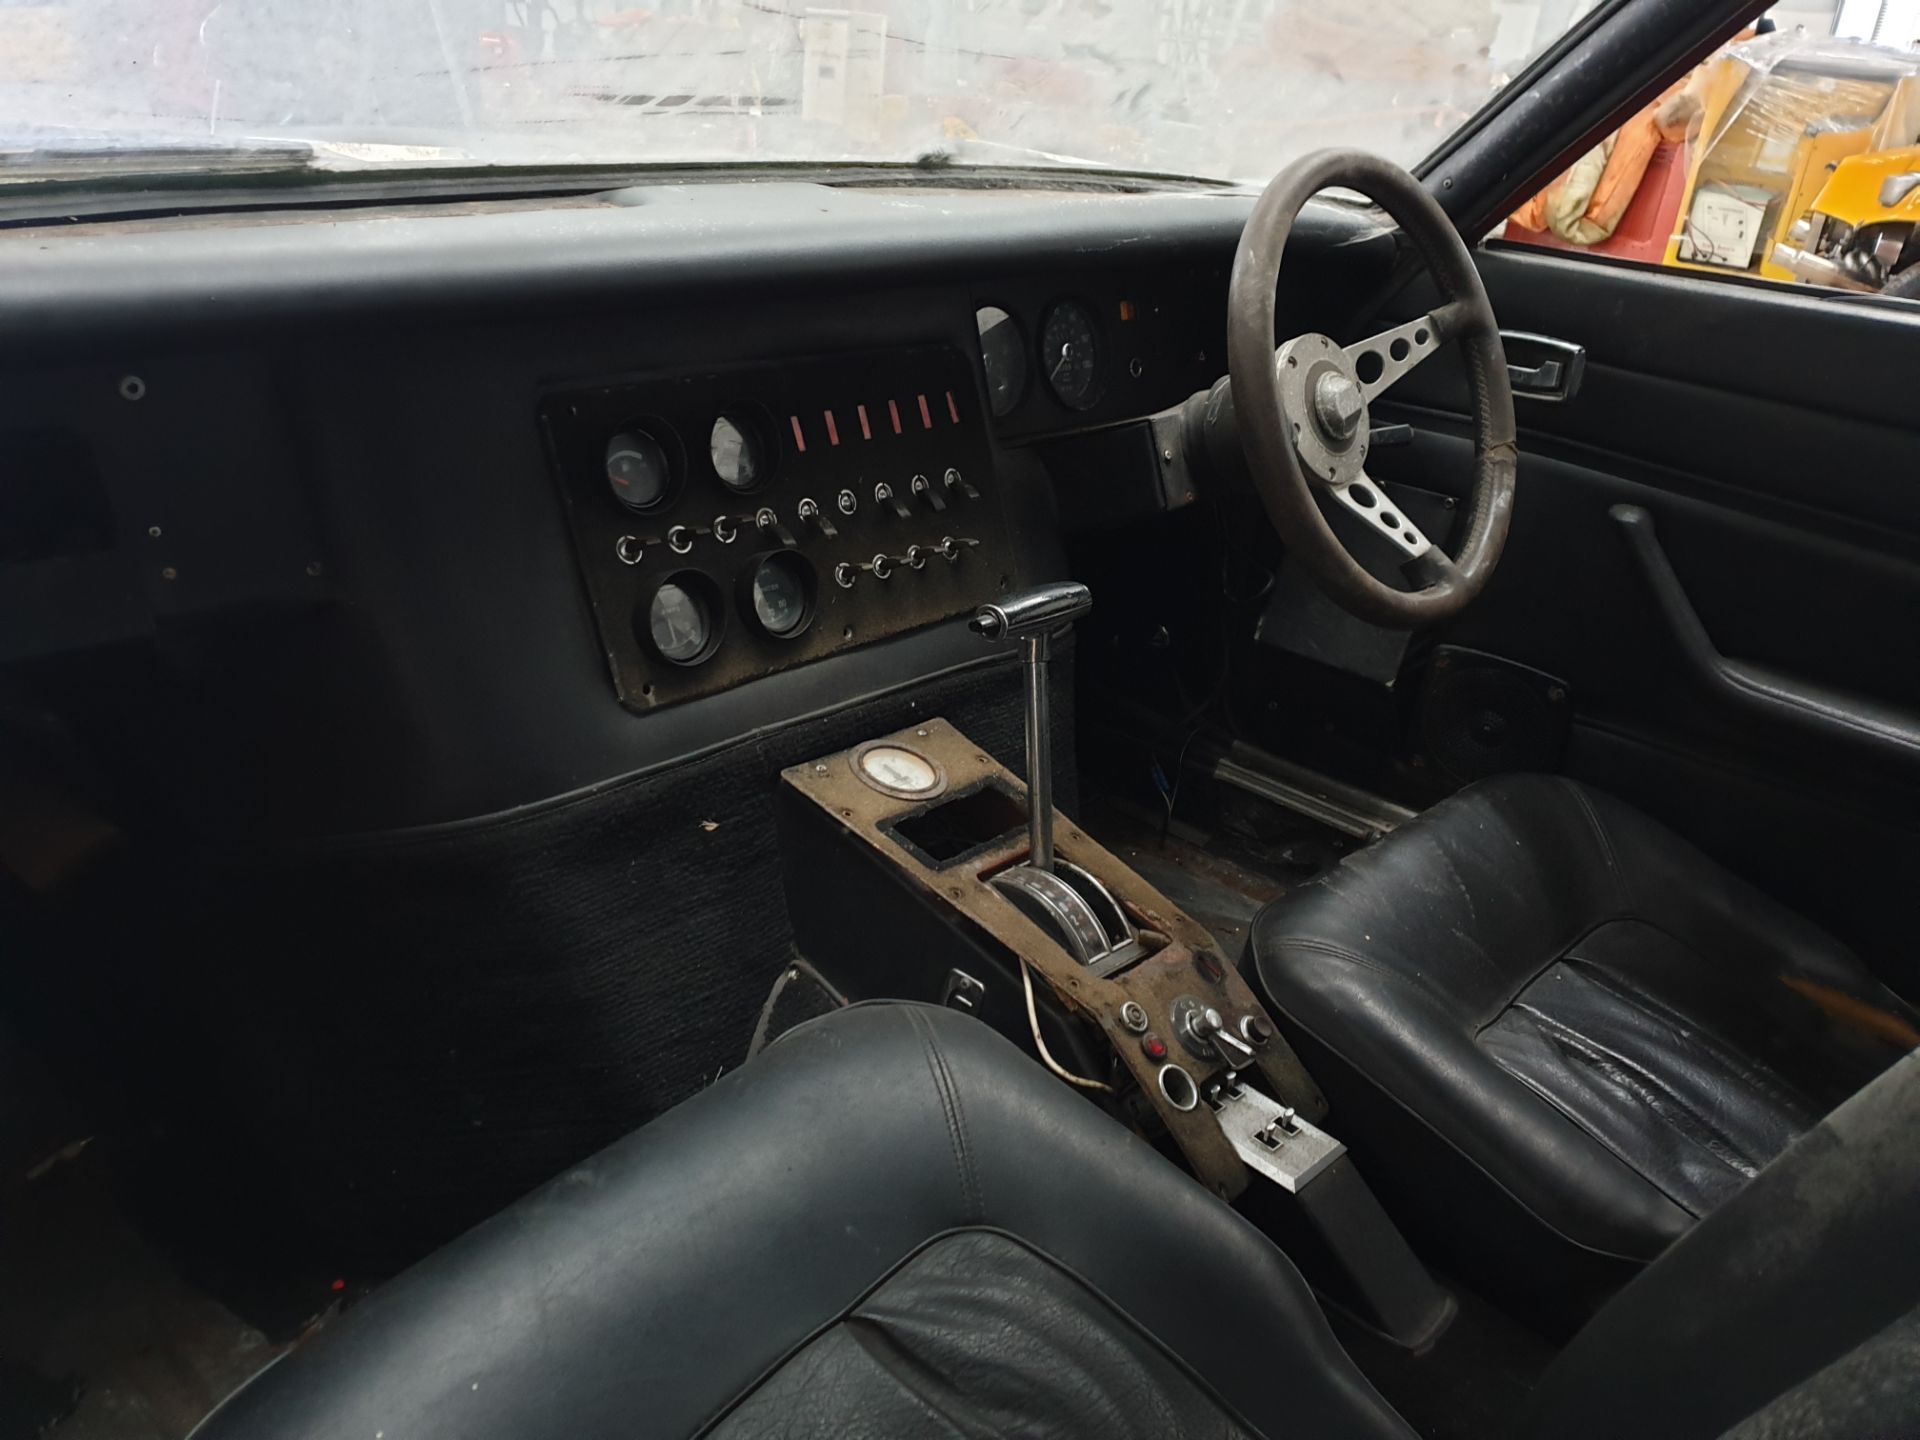 Ford Capri "Hocus Pocus" Drag Car - Image 14 of 24